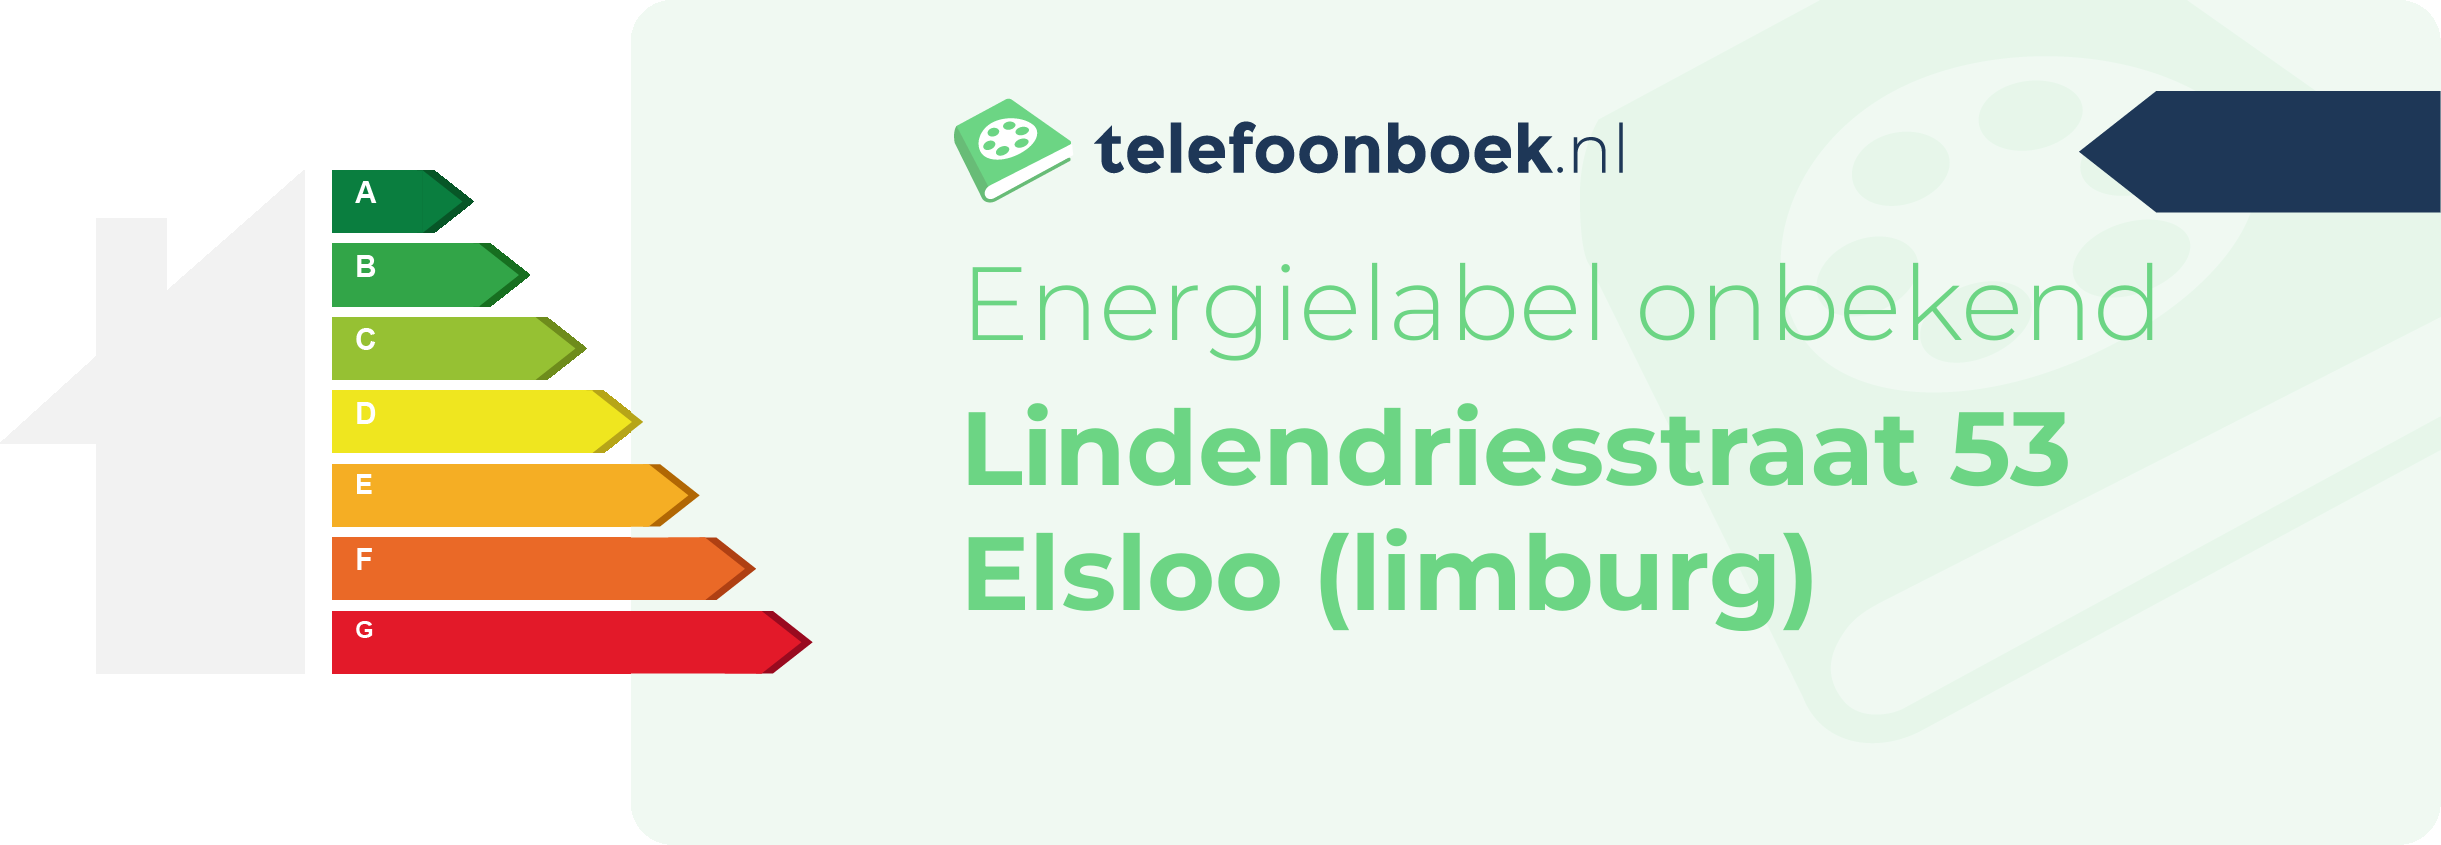 Energielabel Lindendriesstraat 53 Elsloo (Limburg)